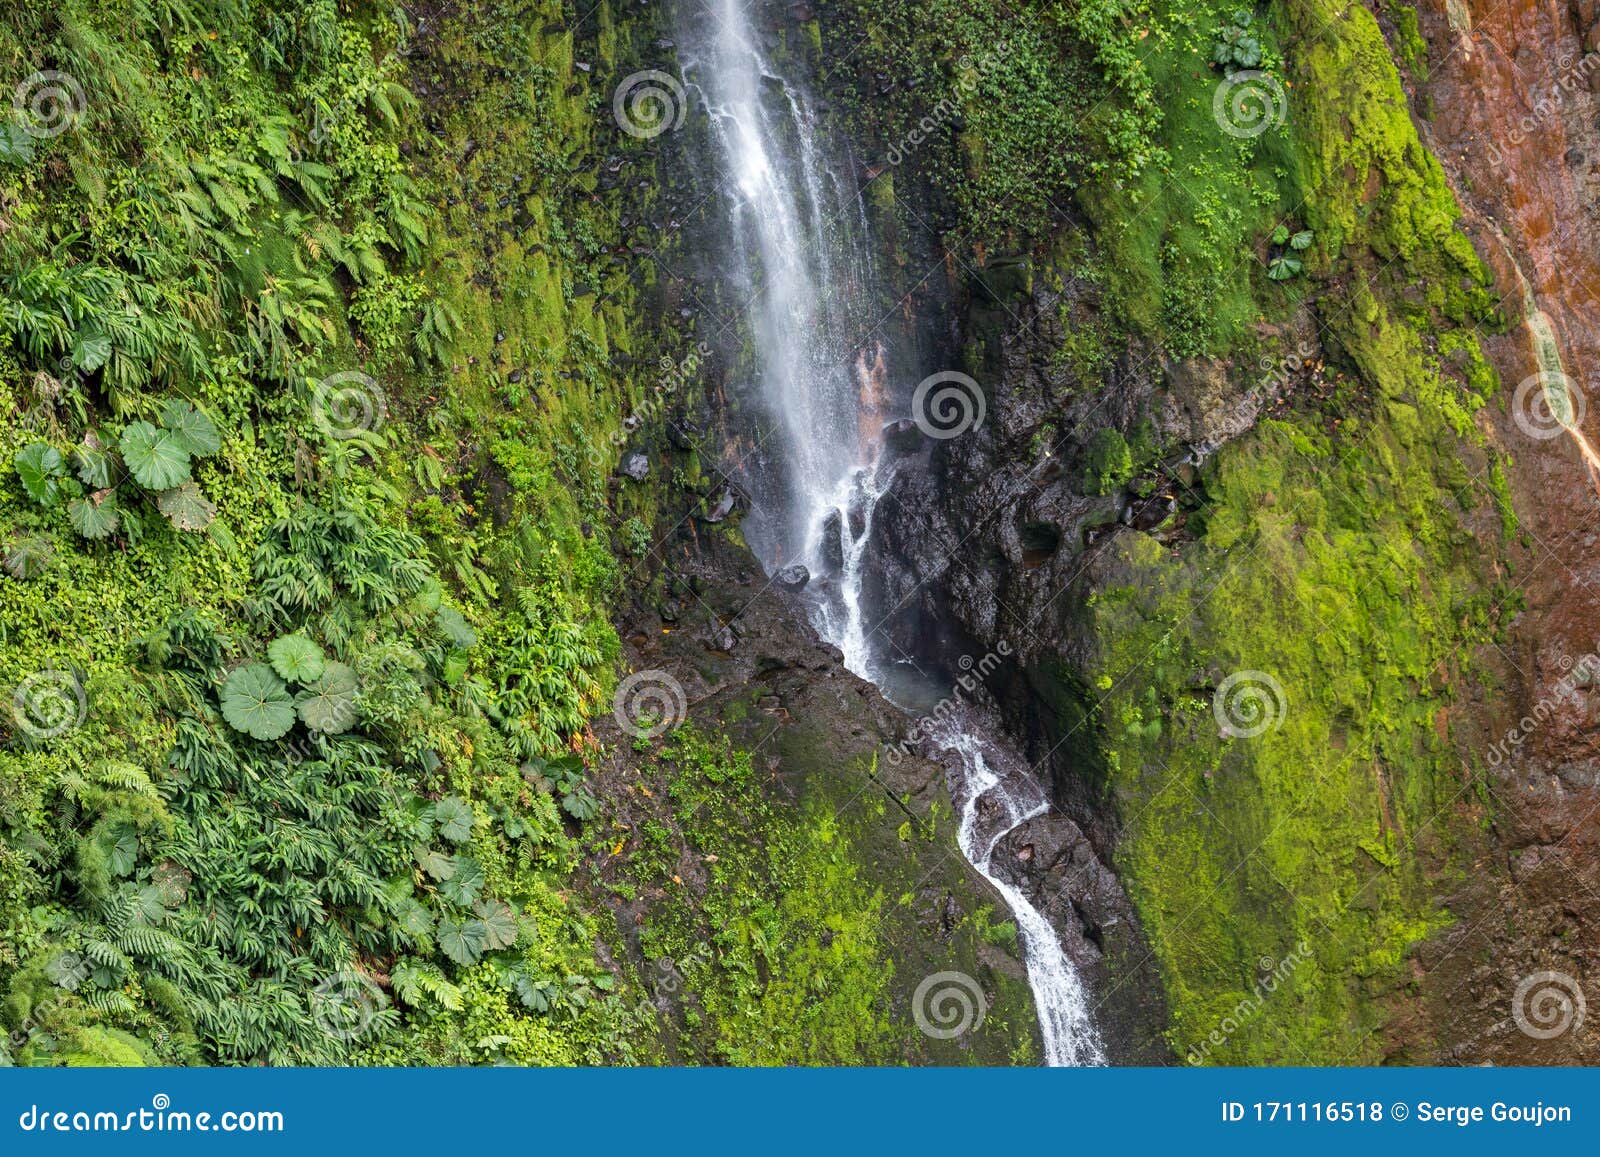 catarata del toro waterfall near poas volcano, costa rica